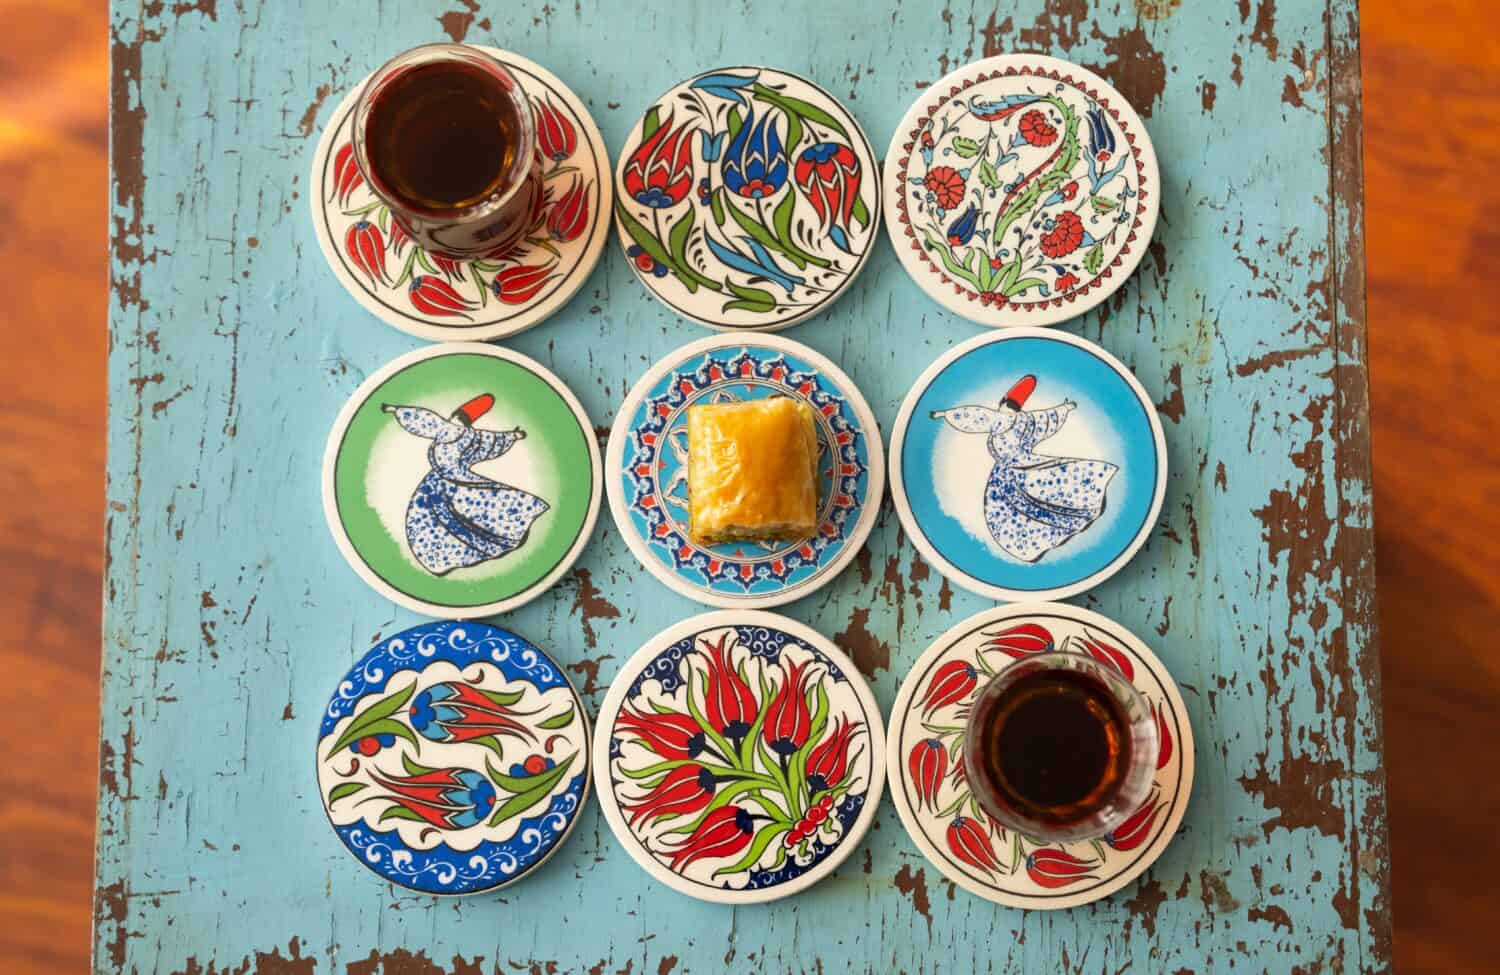 Fotografia di baklava turco in piastrelle ottomane tazza di caffè turco e concetto di tè turco, Uskudar Istanbul, Turchia